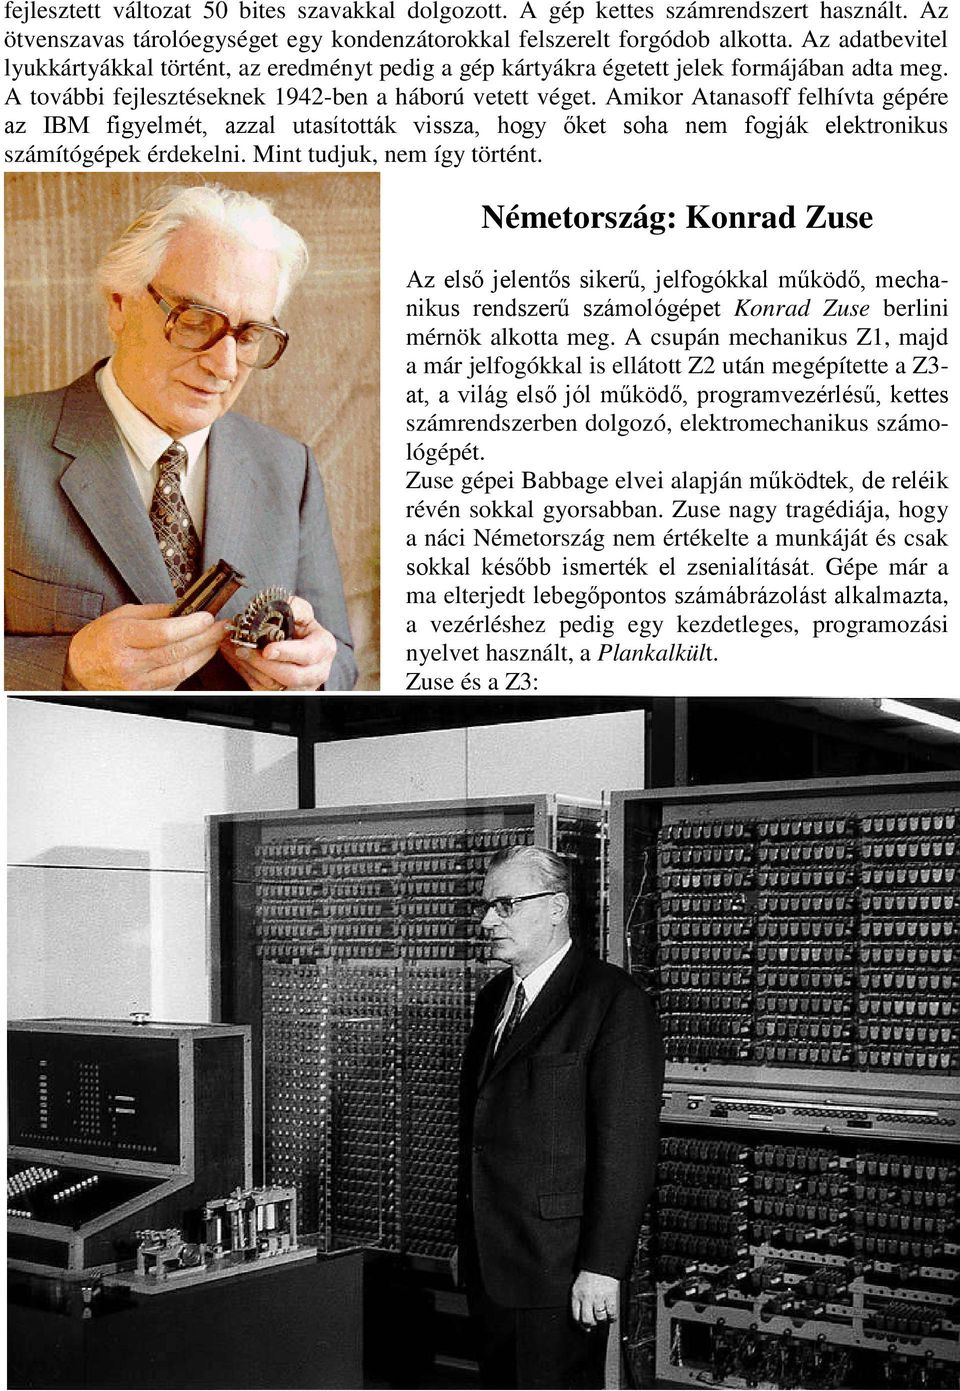 Amikor Atanasoff felhívta gépére az IBM figyelmét, azzal utasították vissza, hogy őket soha nem fogják elektronikus számítógépek érdekelni. Mint tudjuk, nem így történt.